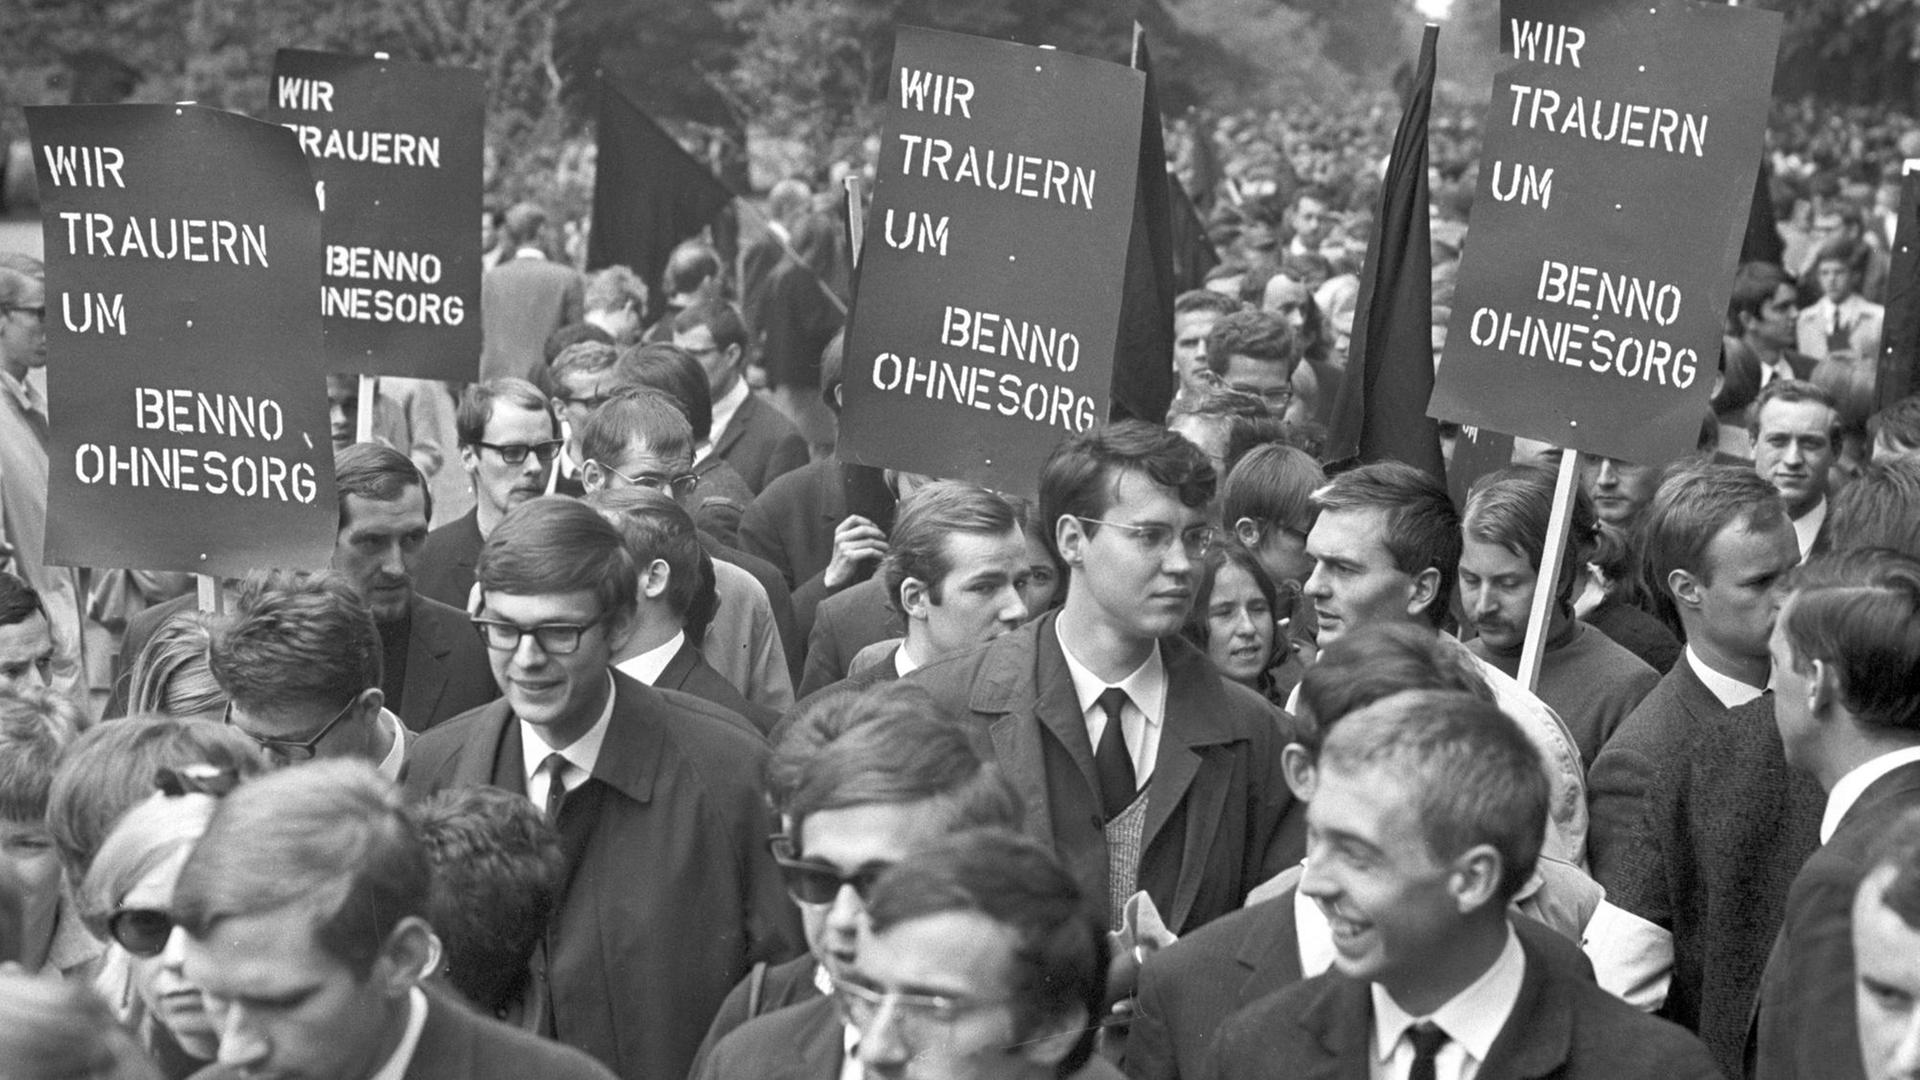 Am 09.06.1967 bekundeten 7.000 Studenten in Hannover in einem Schweigemarsch ihre Trauer um den am 02.06.1967 bei einer Anti-Schah-Demonstration in Berlin erschossenen Benno Ohnesorg. Es war die größte Kundgebung dieser Art die bis dato von Studenten in der niedersächsischen Landeshauptstadt veranstaltet wurde.